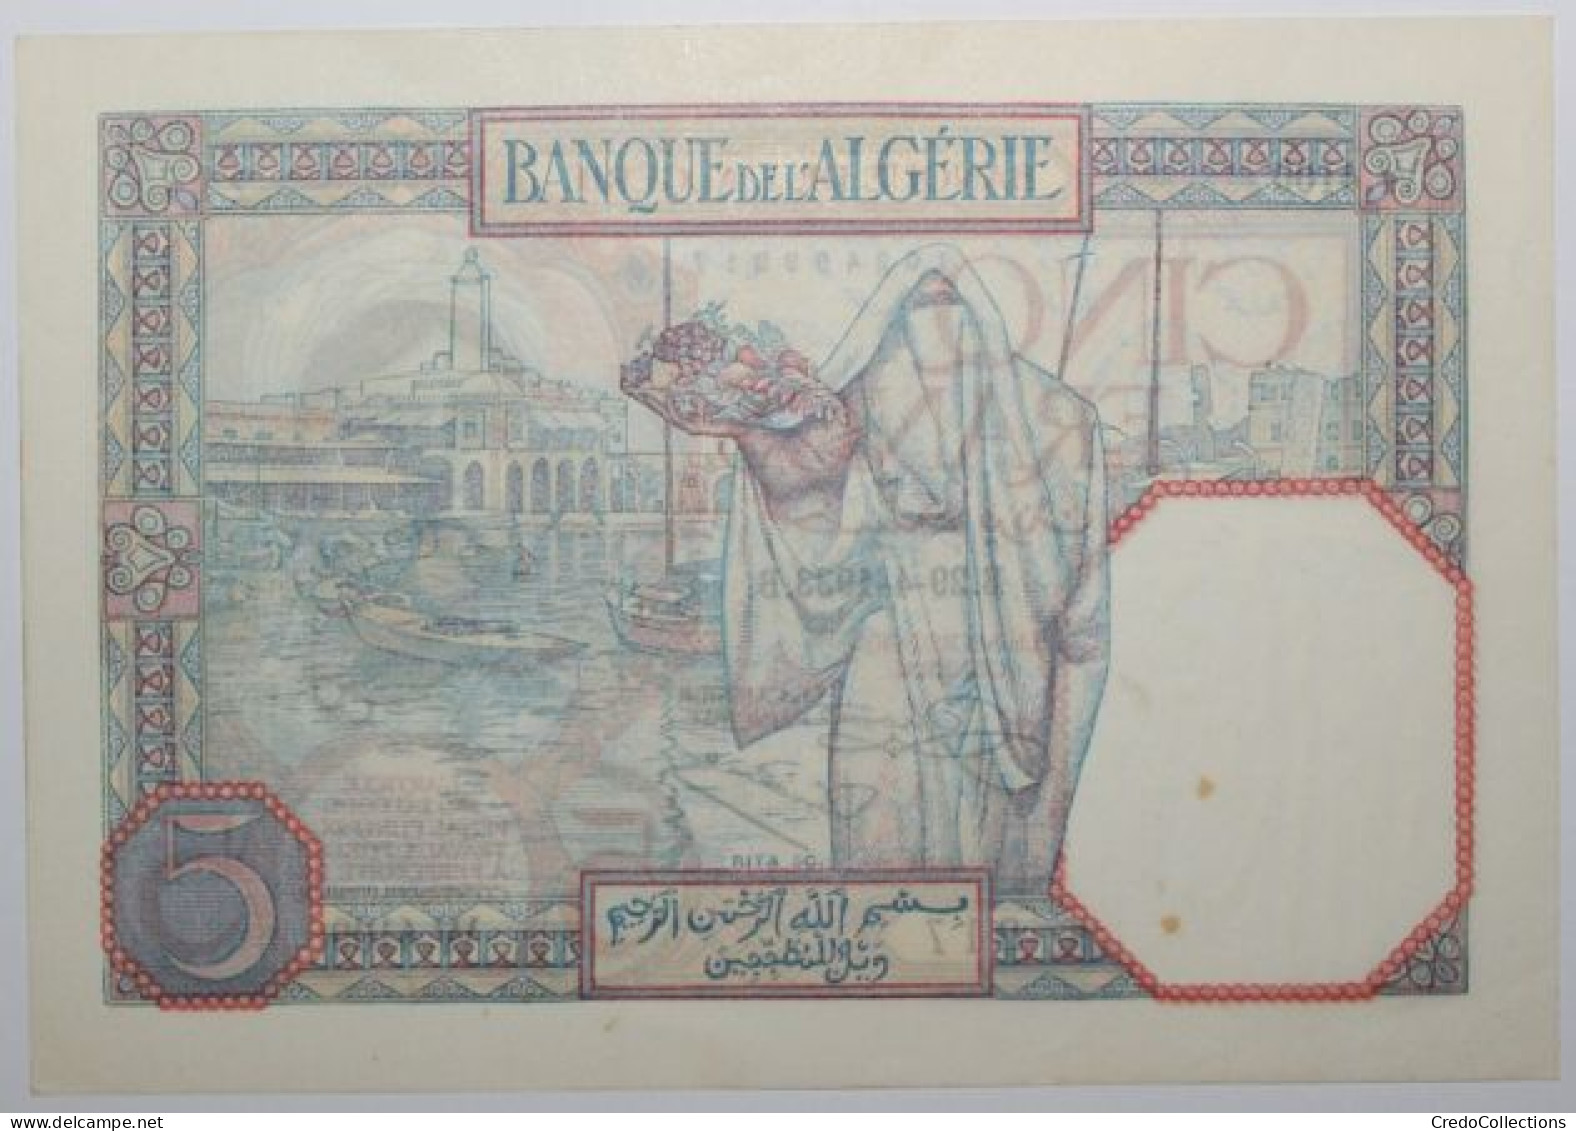 Algérie - 5 Francs - 1933 - PICK 77a.3 - SUP - Algerien